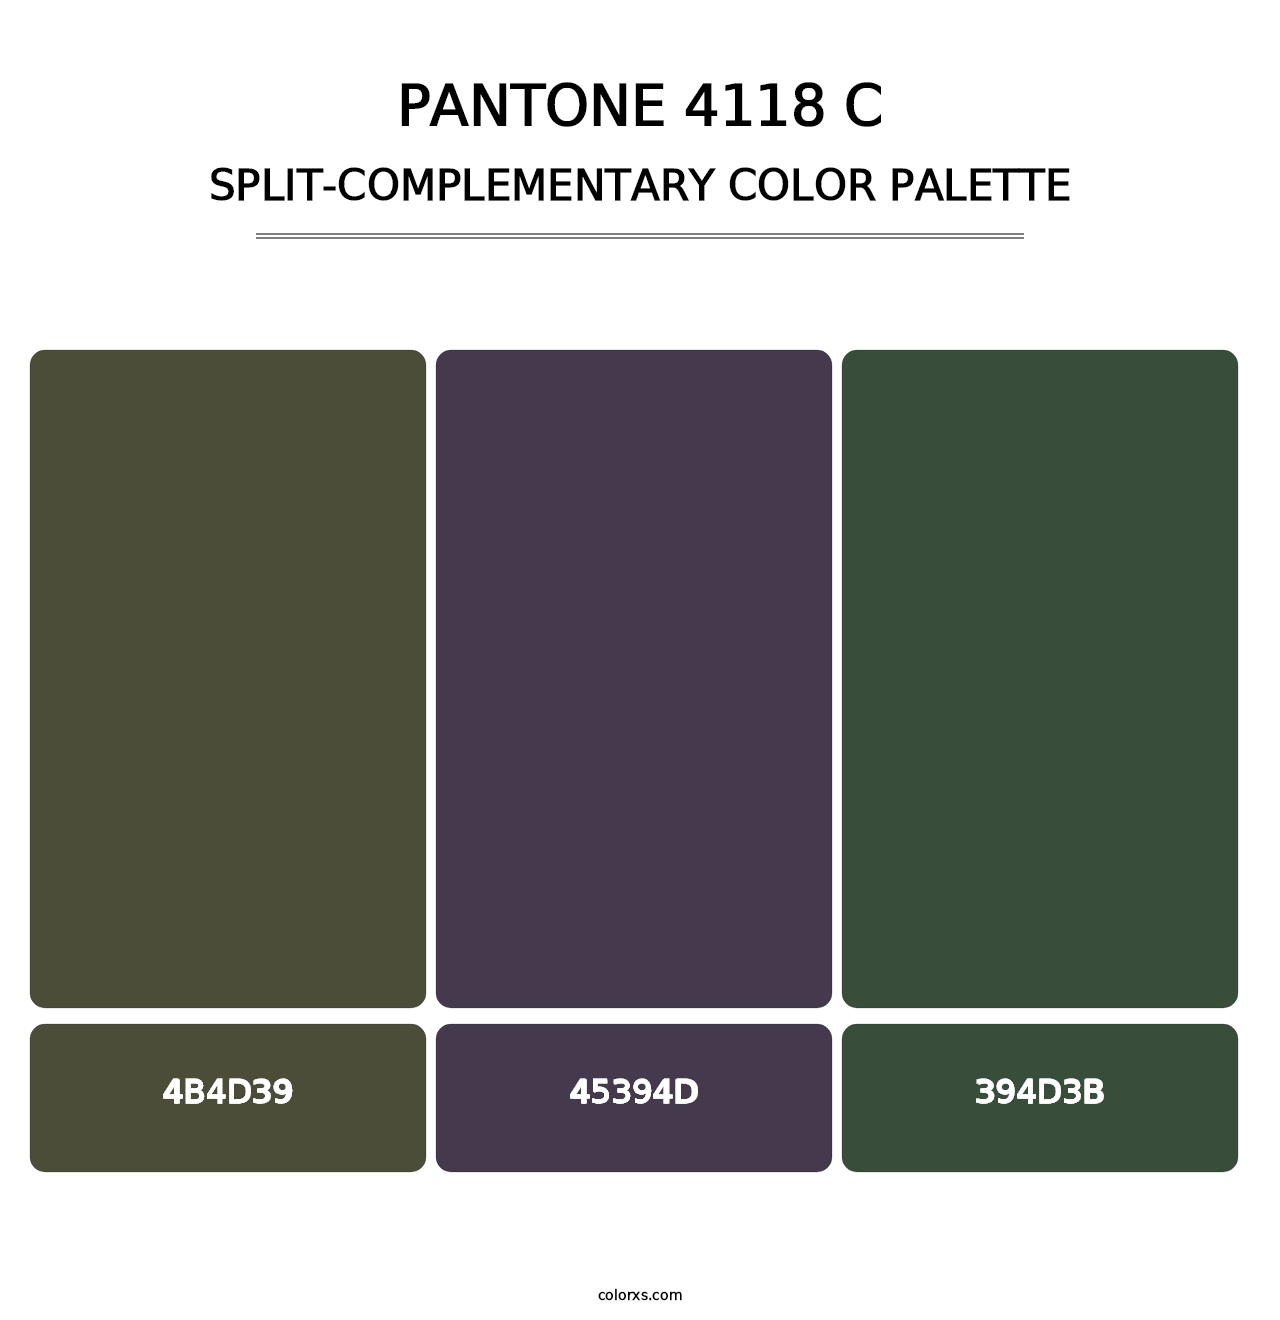 PANTONE 4118 C - Split-Complementary Color Palette